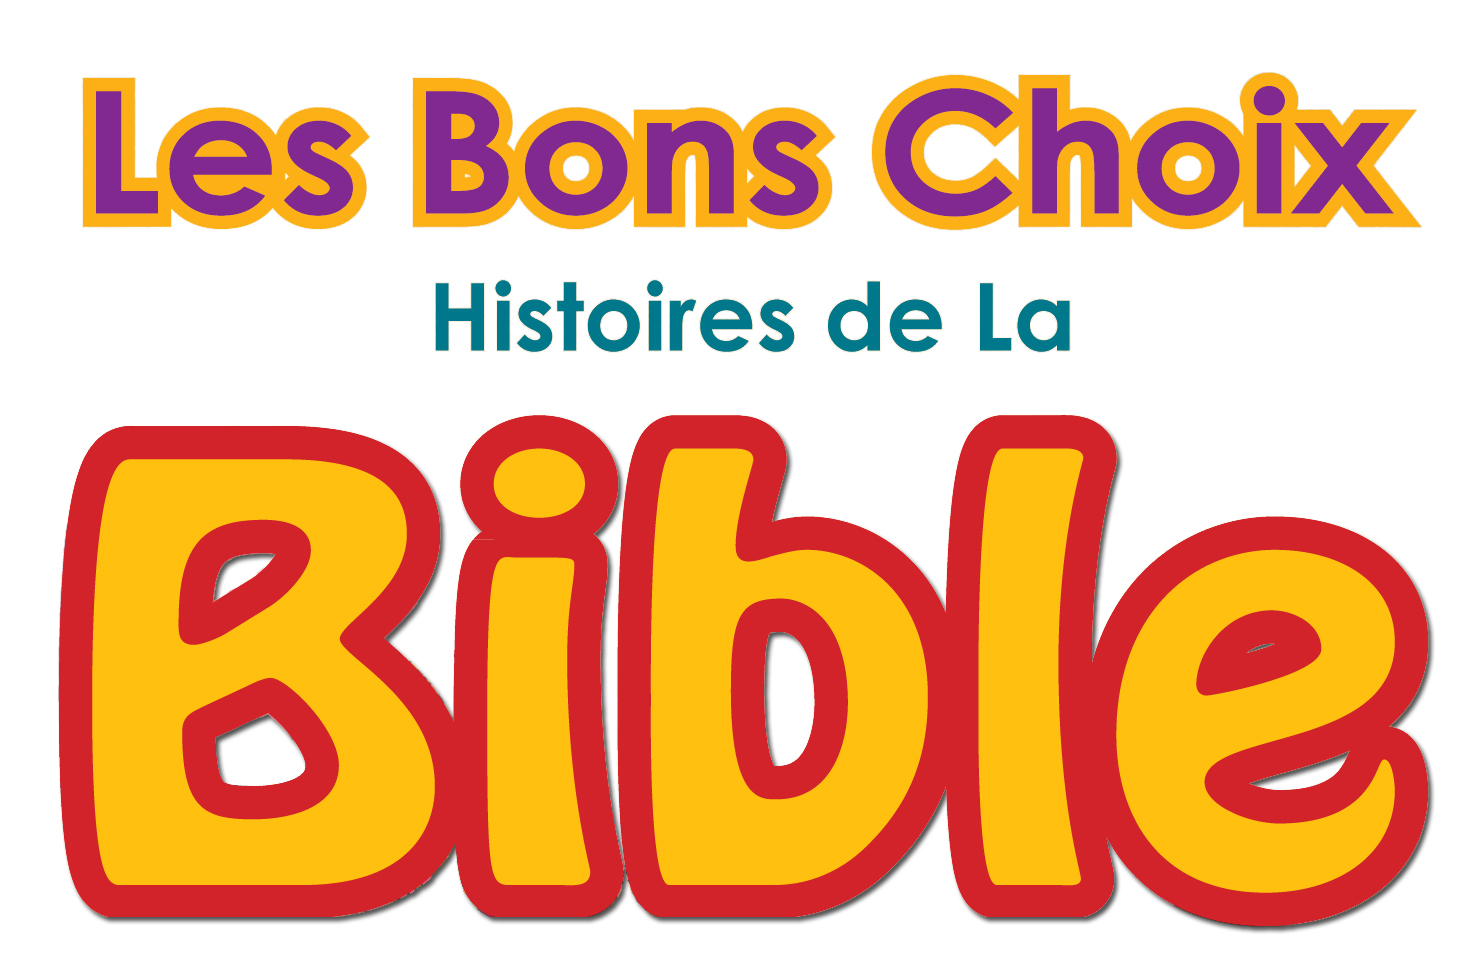 Les Bons Choix Histories de La Bible title